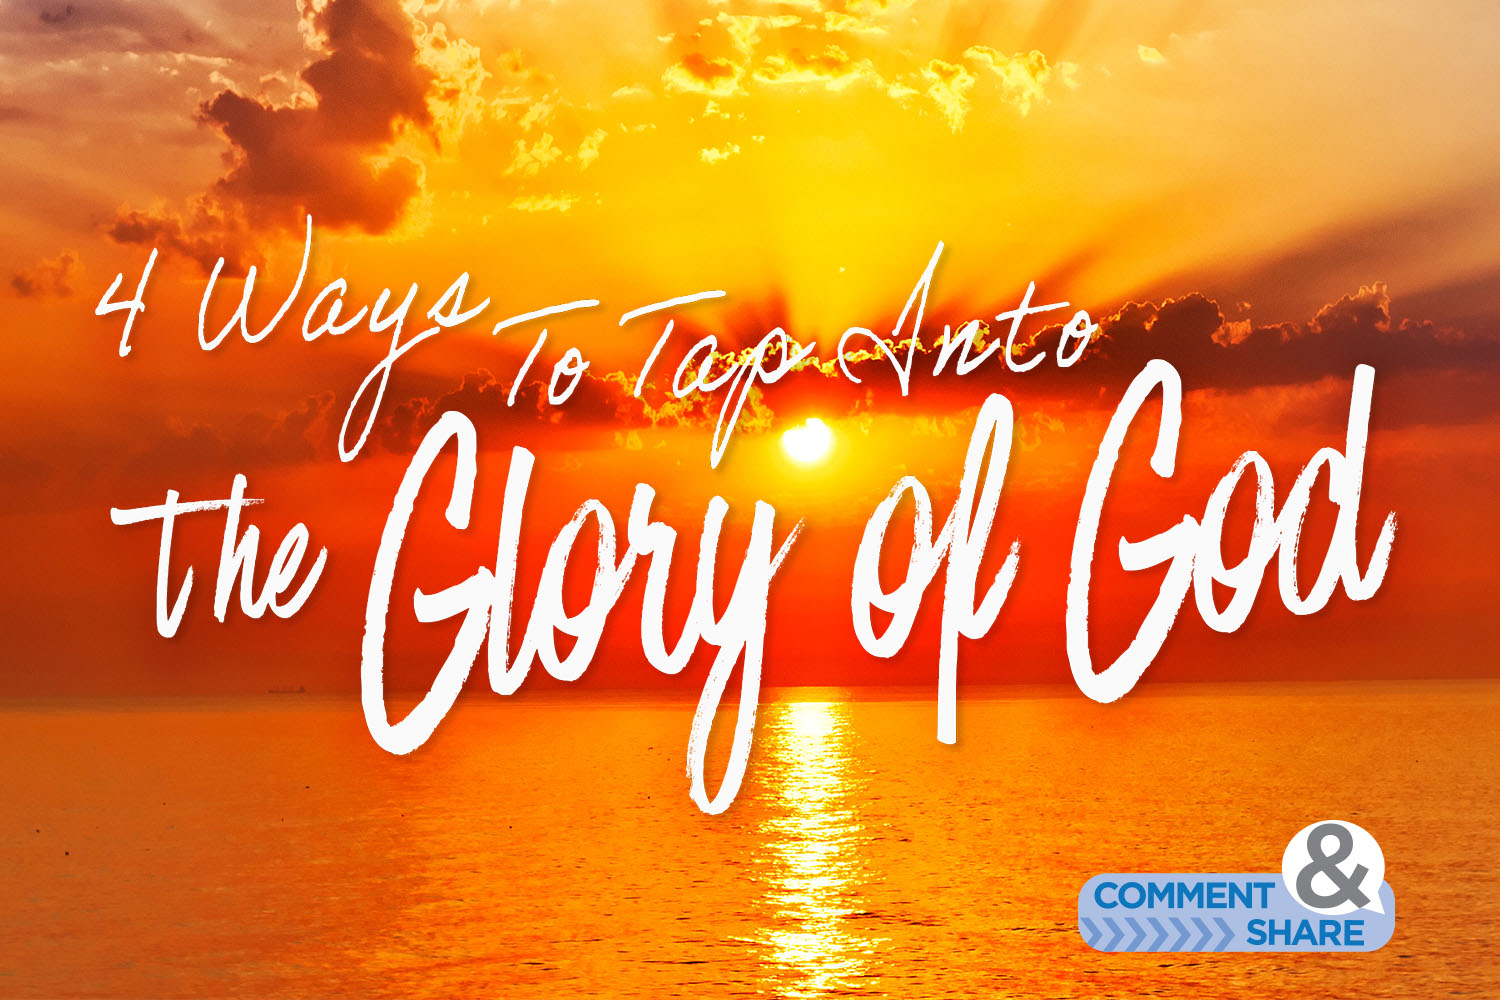 GO GO GO In the Gospel Power 